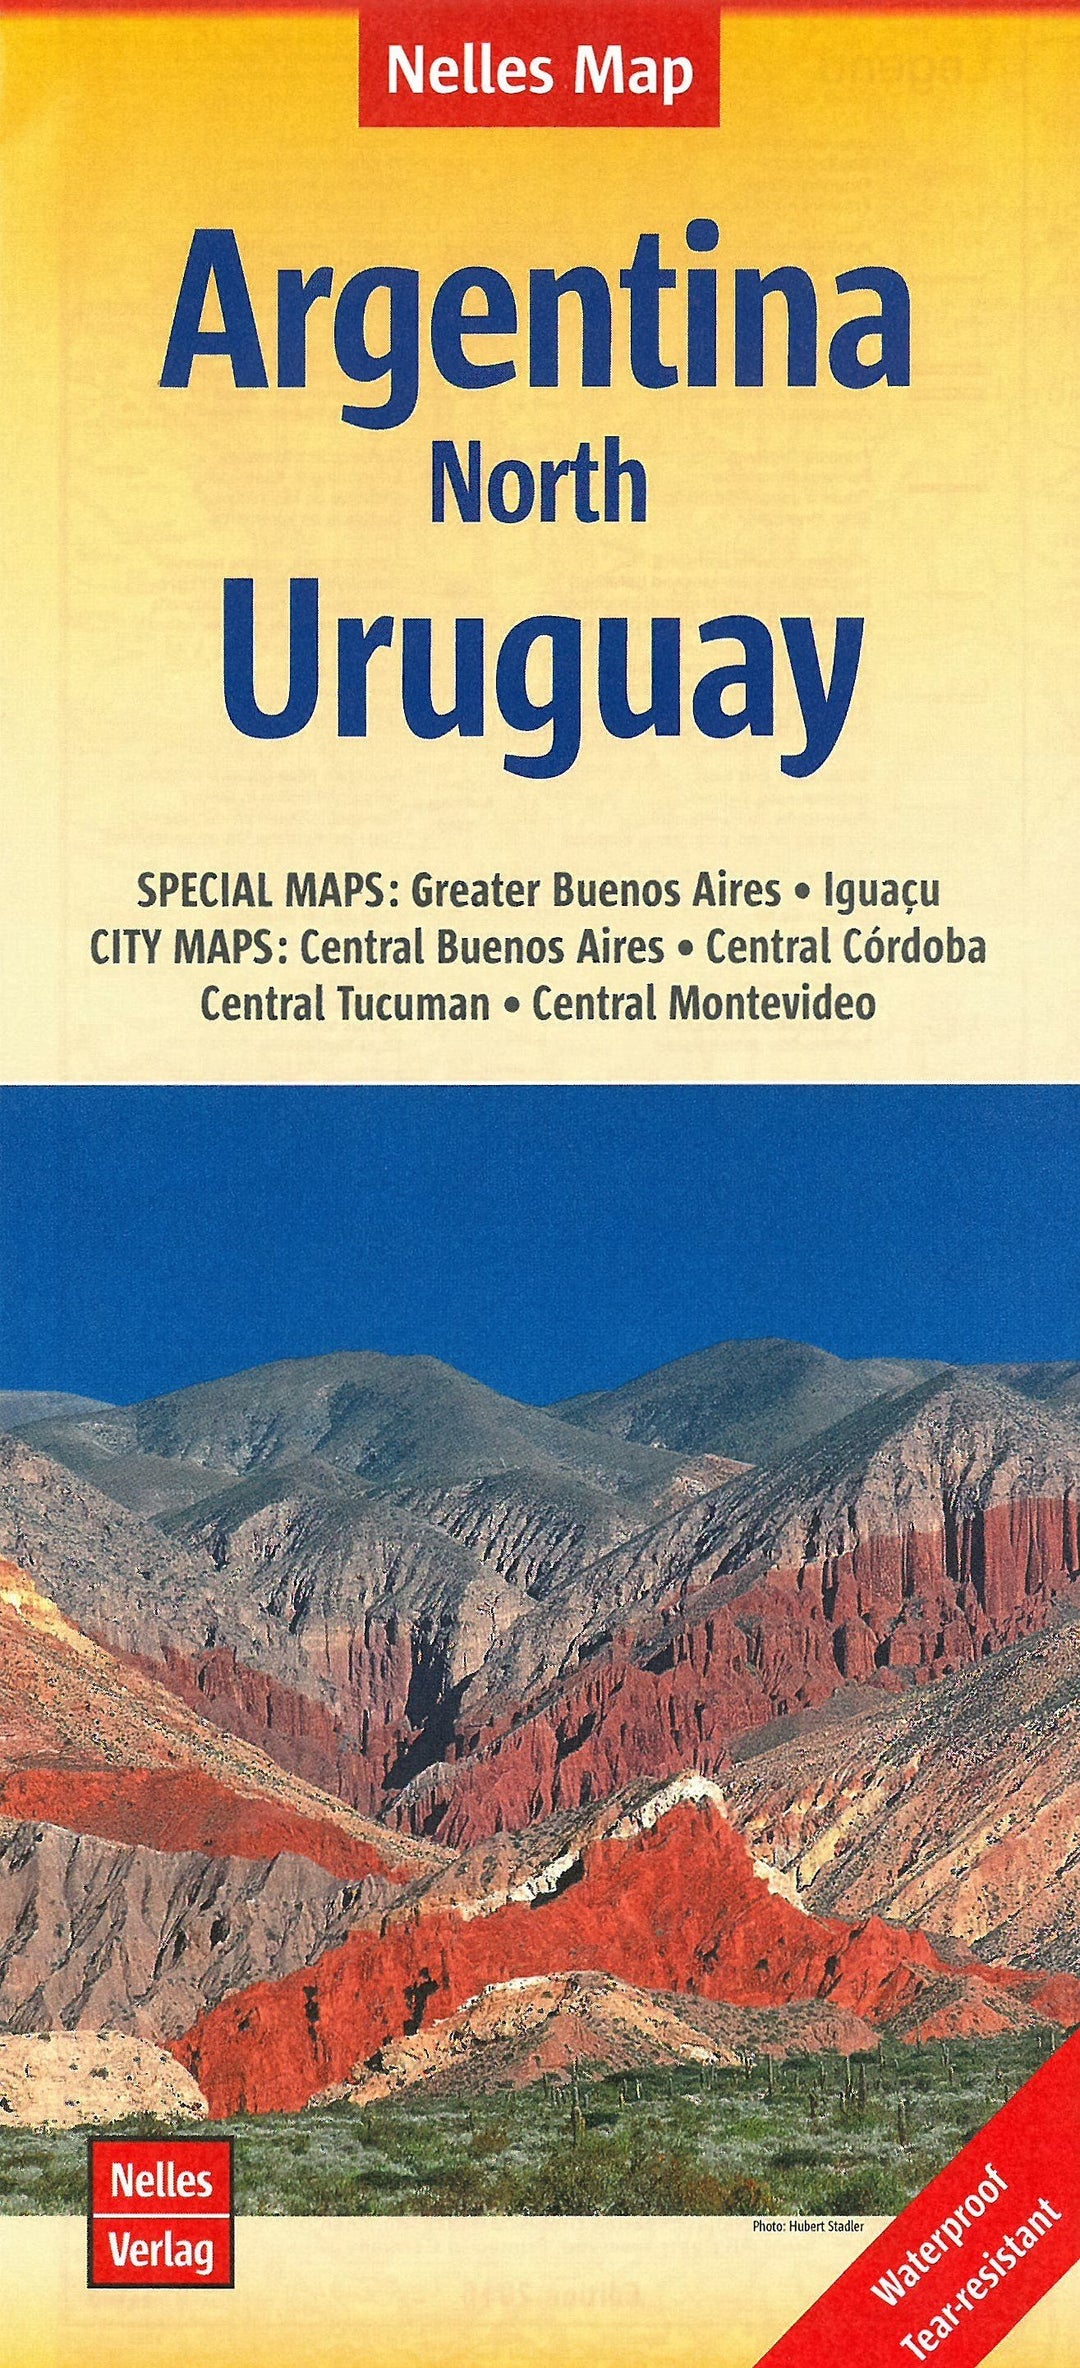 Carte routière imperméable - Argentine Nord & Uruguay | Nelles Map carte pliée Nelles Verlag 